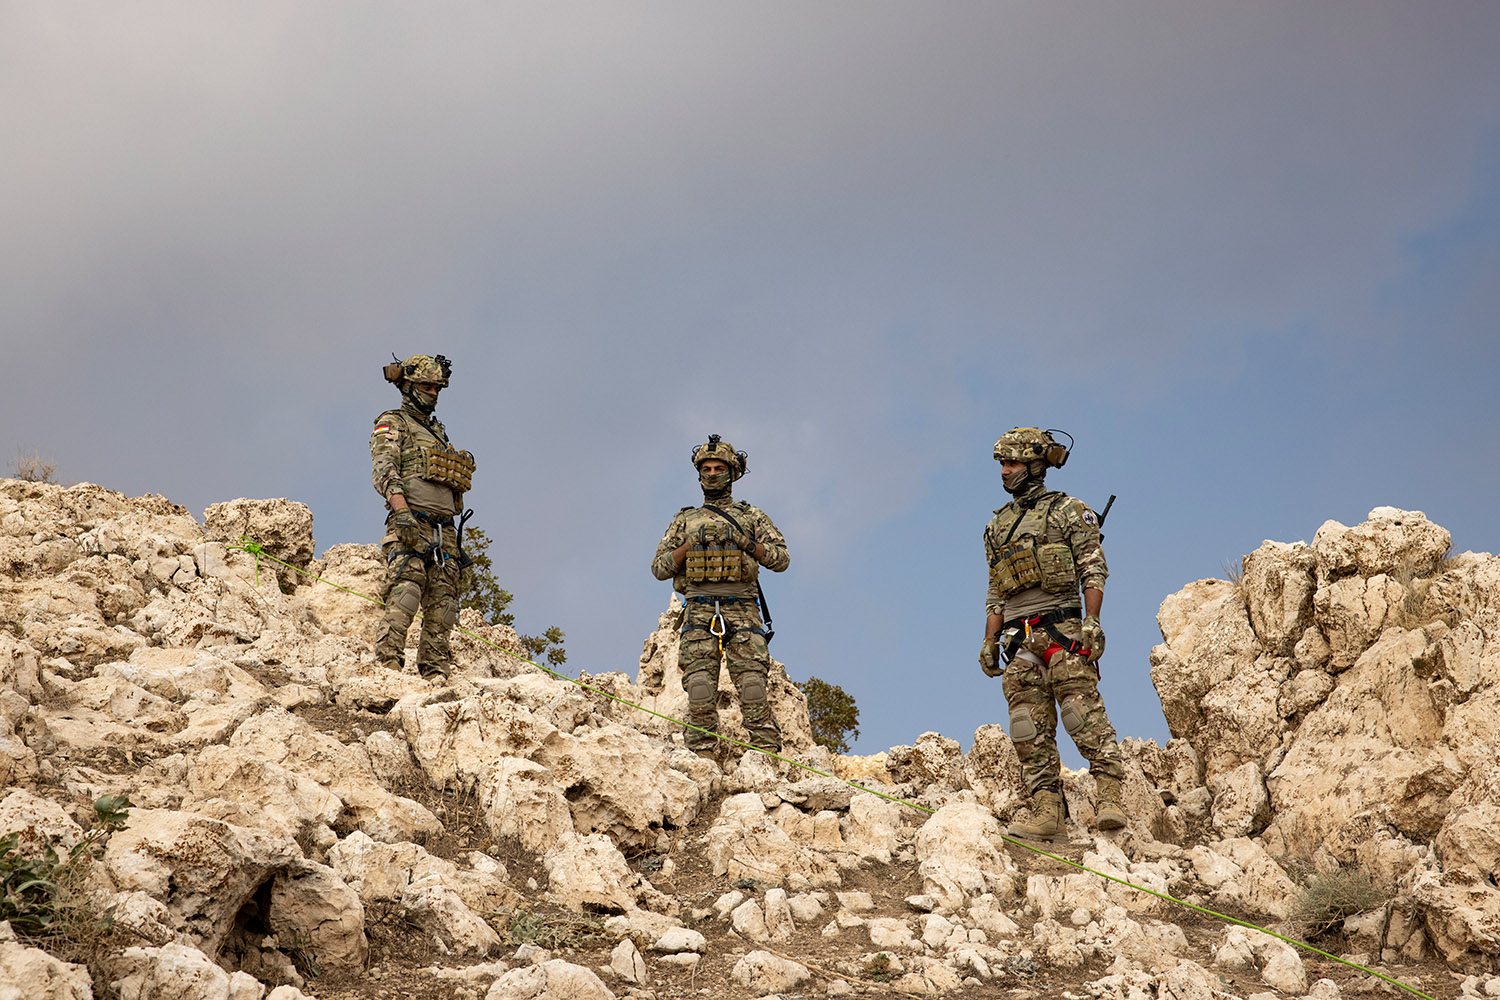 Trois soldats Peshmergas surveillent la montagne, près des grotte de Daech.